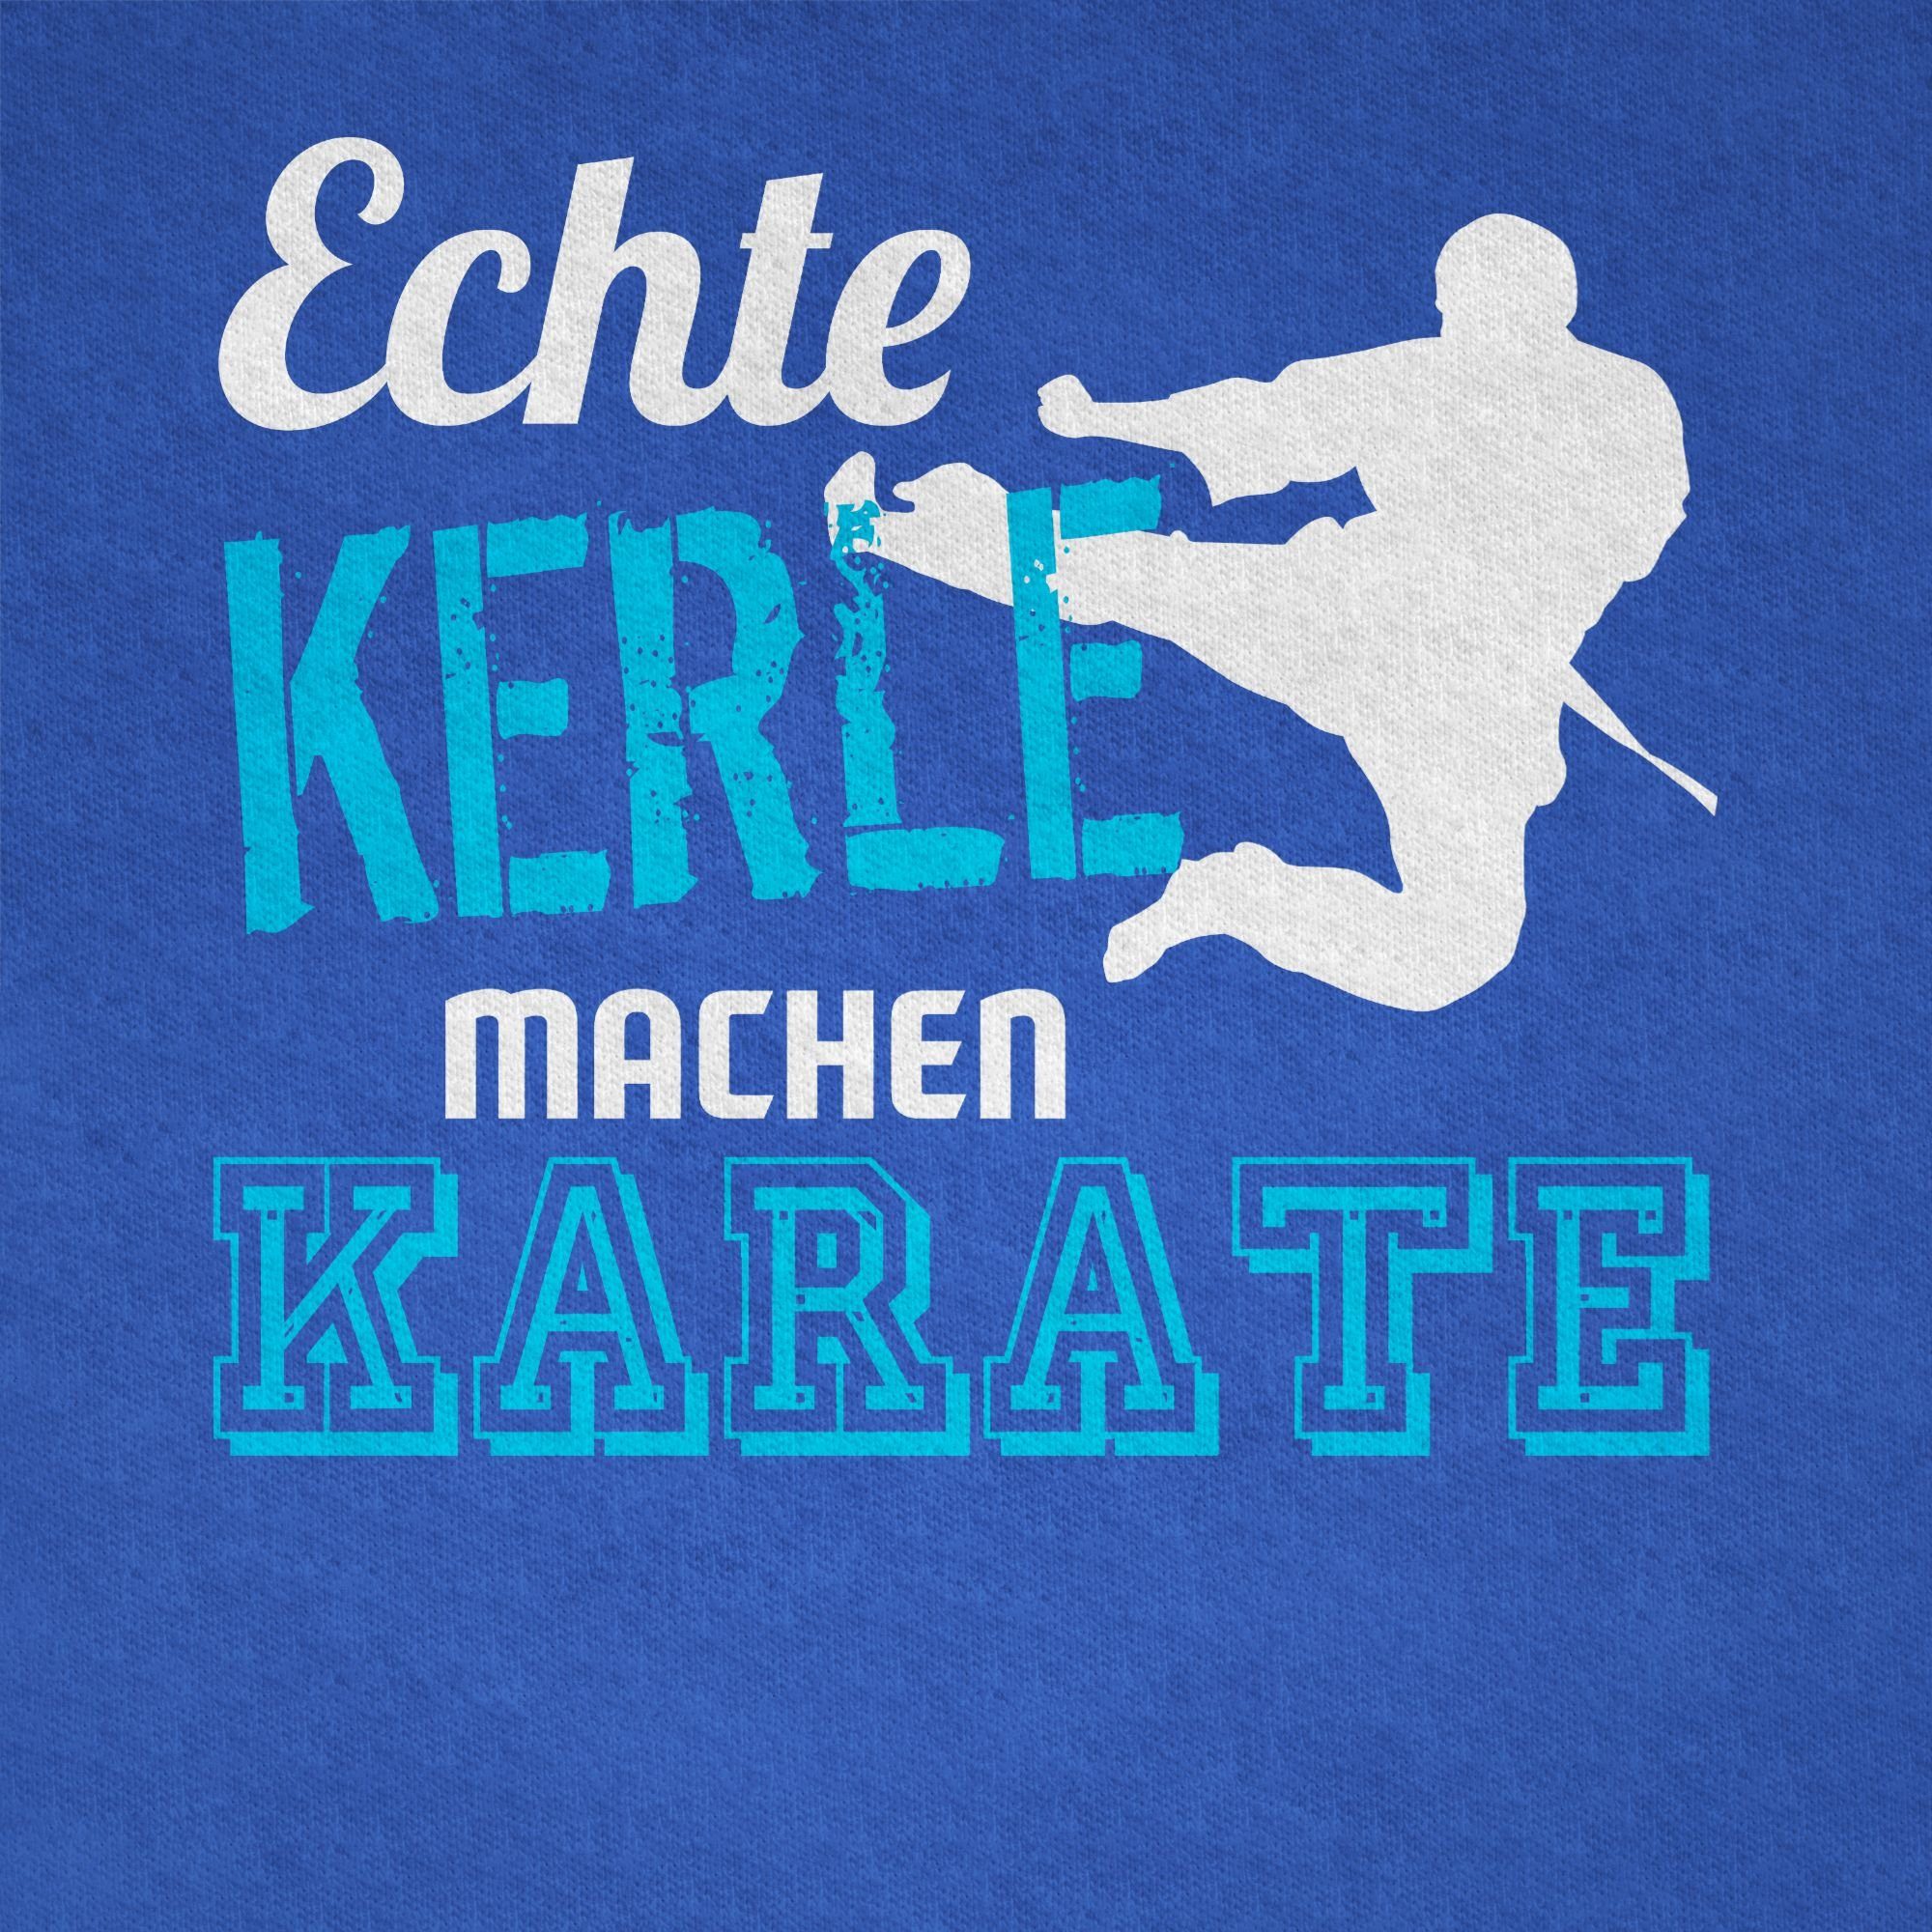 Kerle Kleidung Shirtracer Karate 3 Echte Royalblau Kinder Sport T-Shirt machen